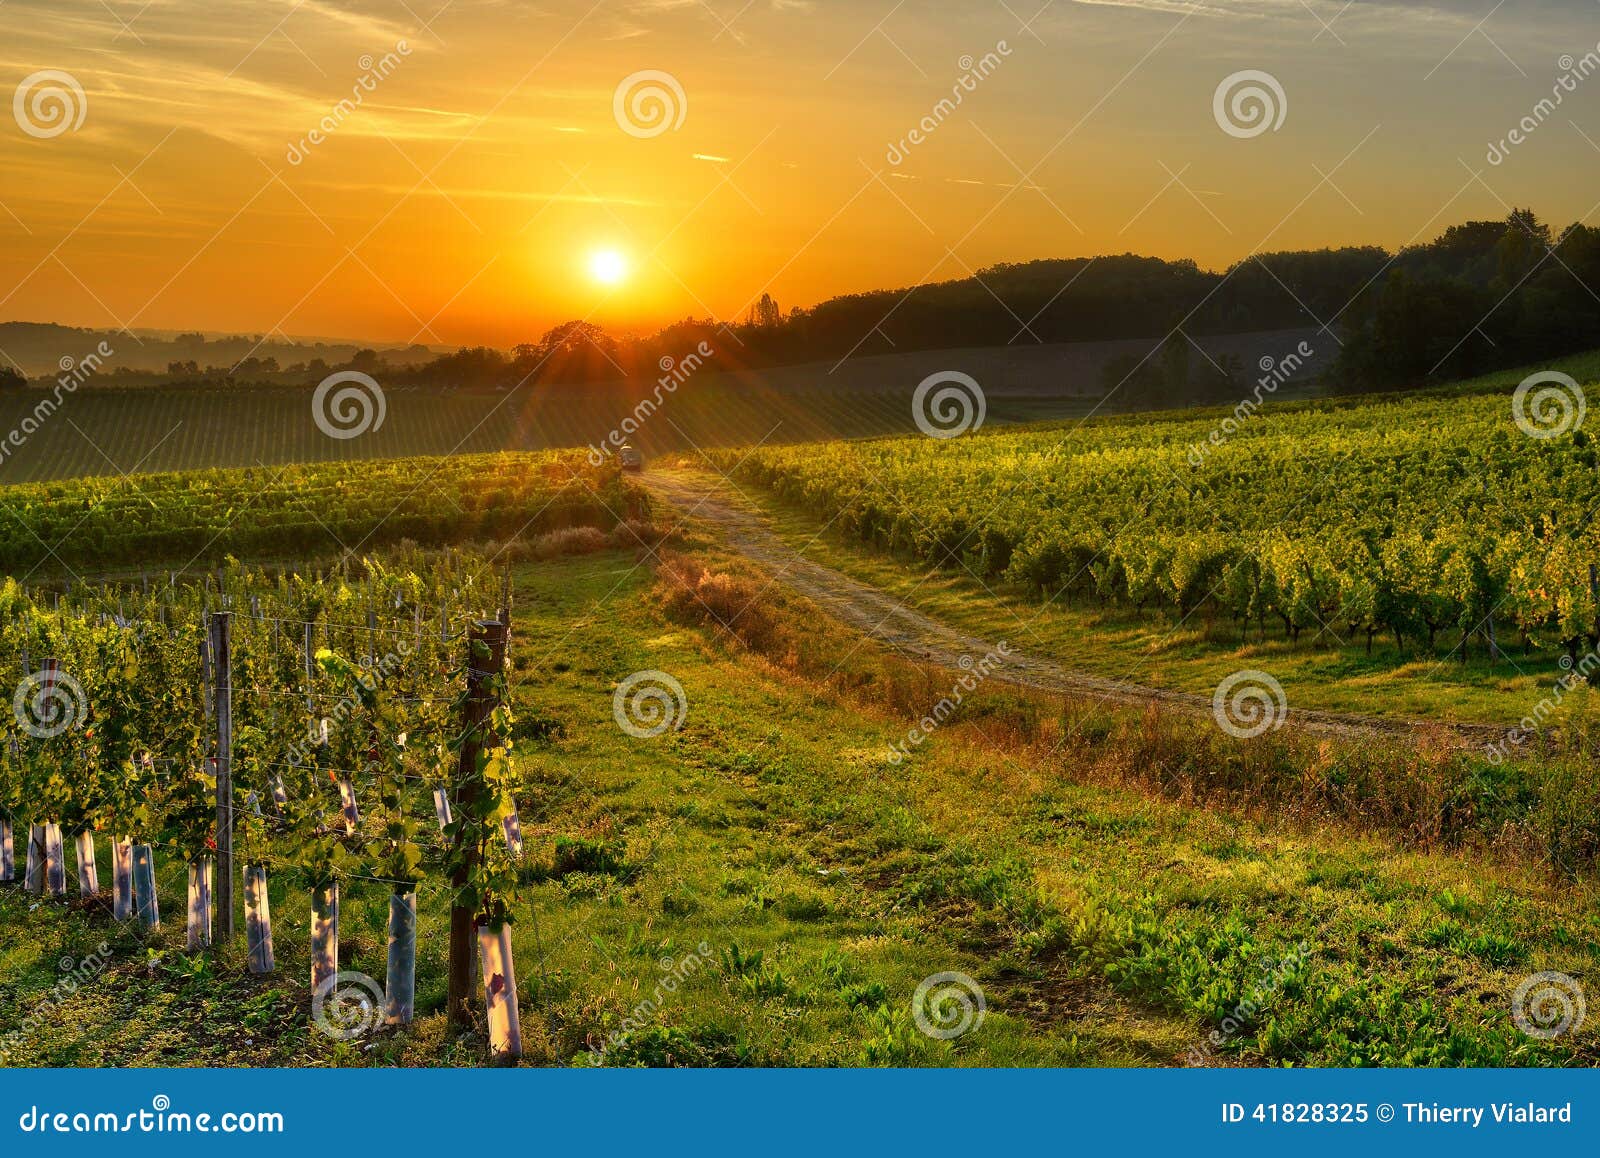 Vignoble Bergerac trois. Lever de soleil au-dessus d'un vignoble dans les sud à l'ouest des Frances, Bergerac